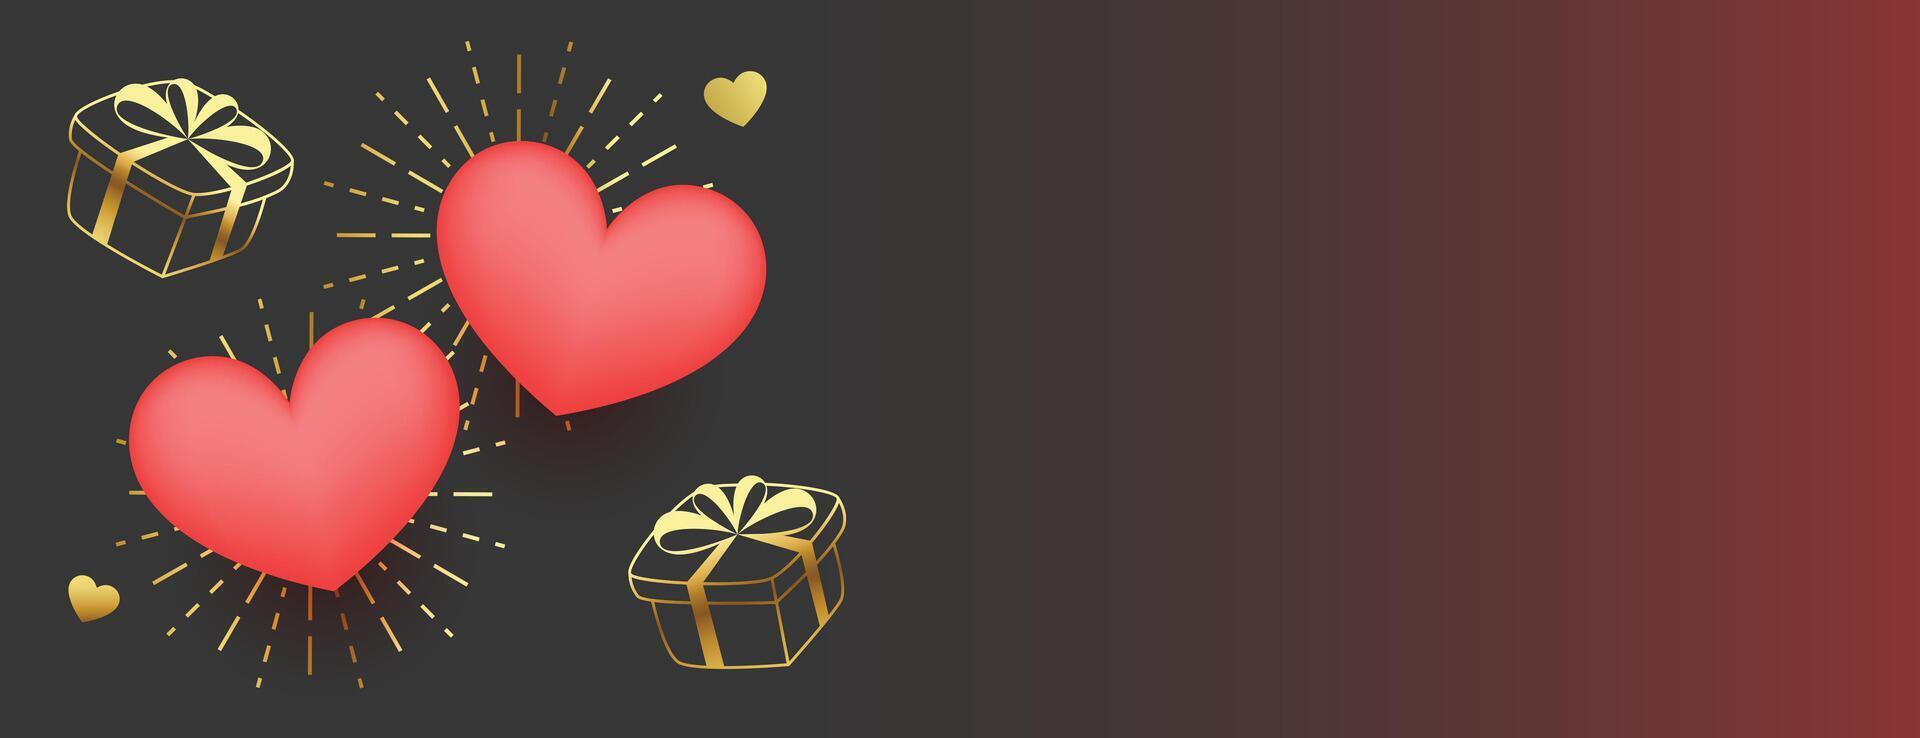 encantador san valentin día saludo bandera con 3d corazones y dorado regalo cajas vector